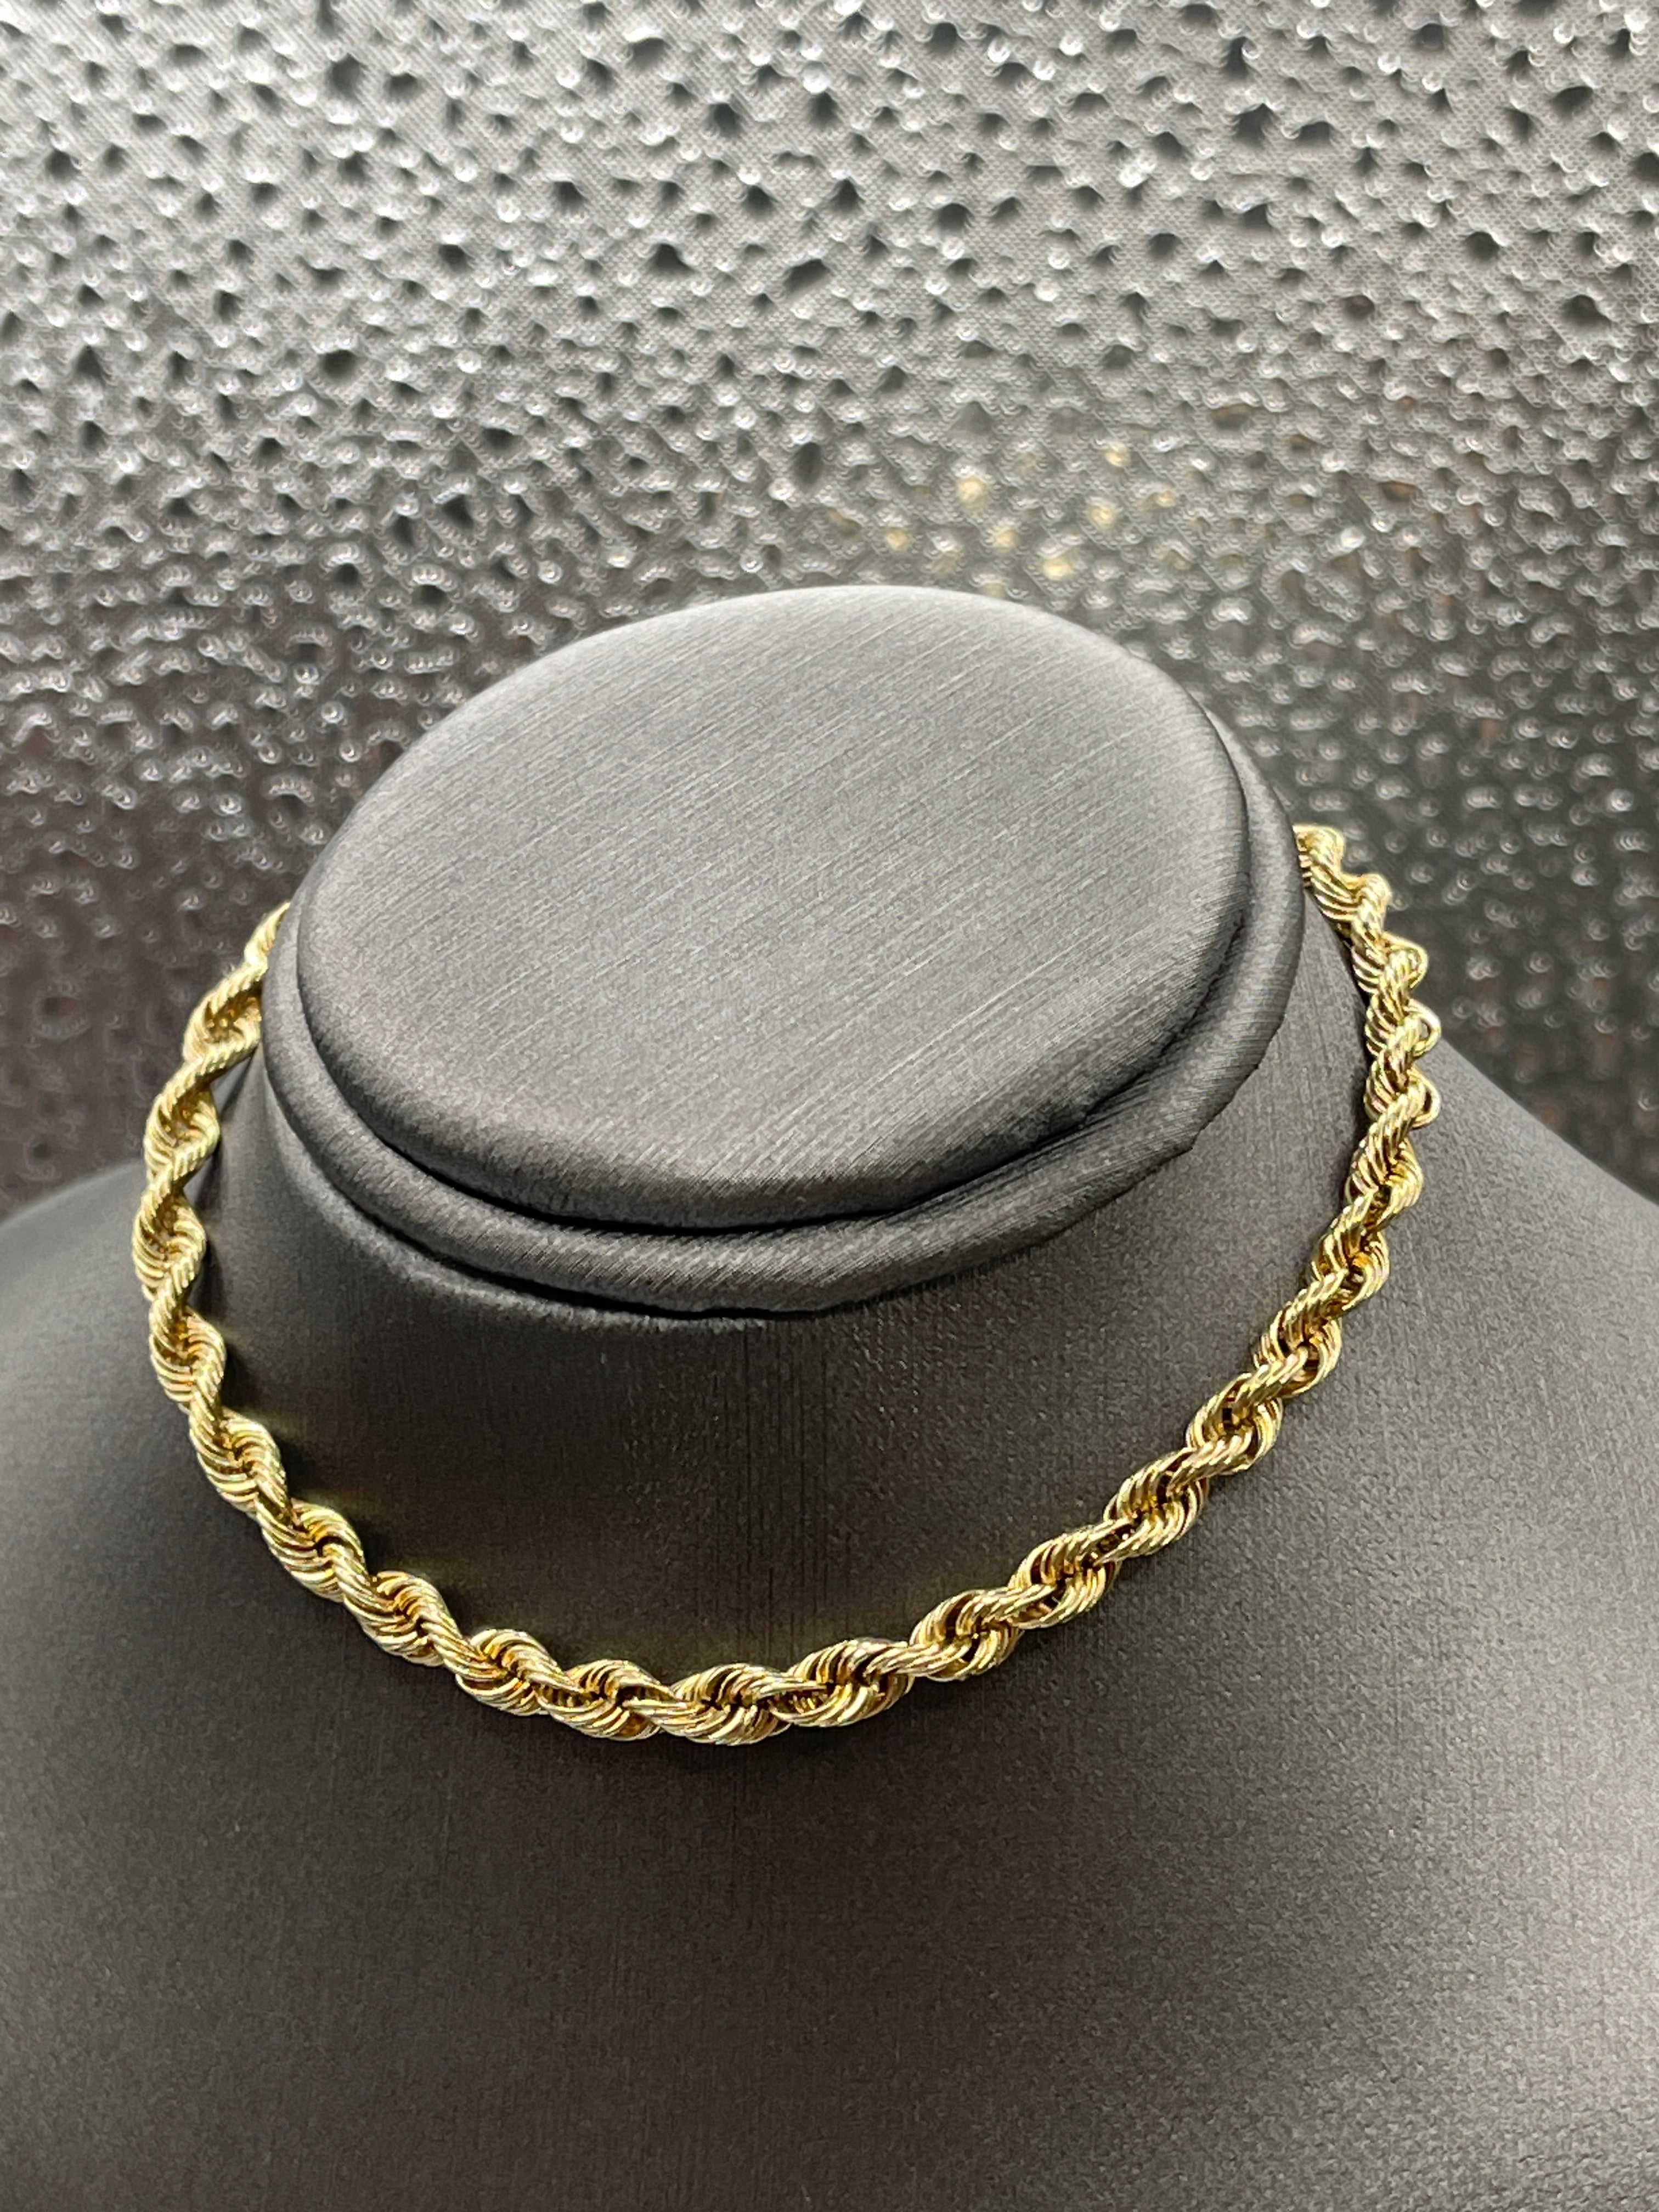 Macy's Rope Chain Bracelet in 10k Gold - Macy's